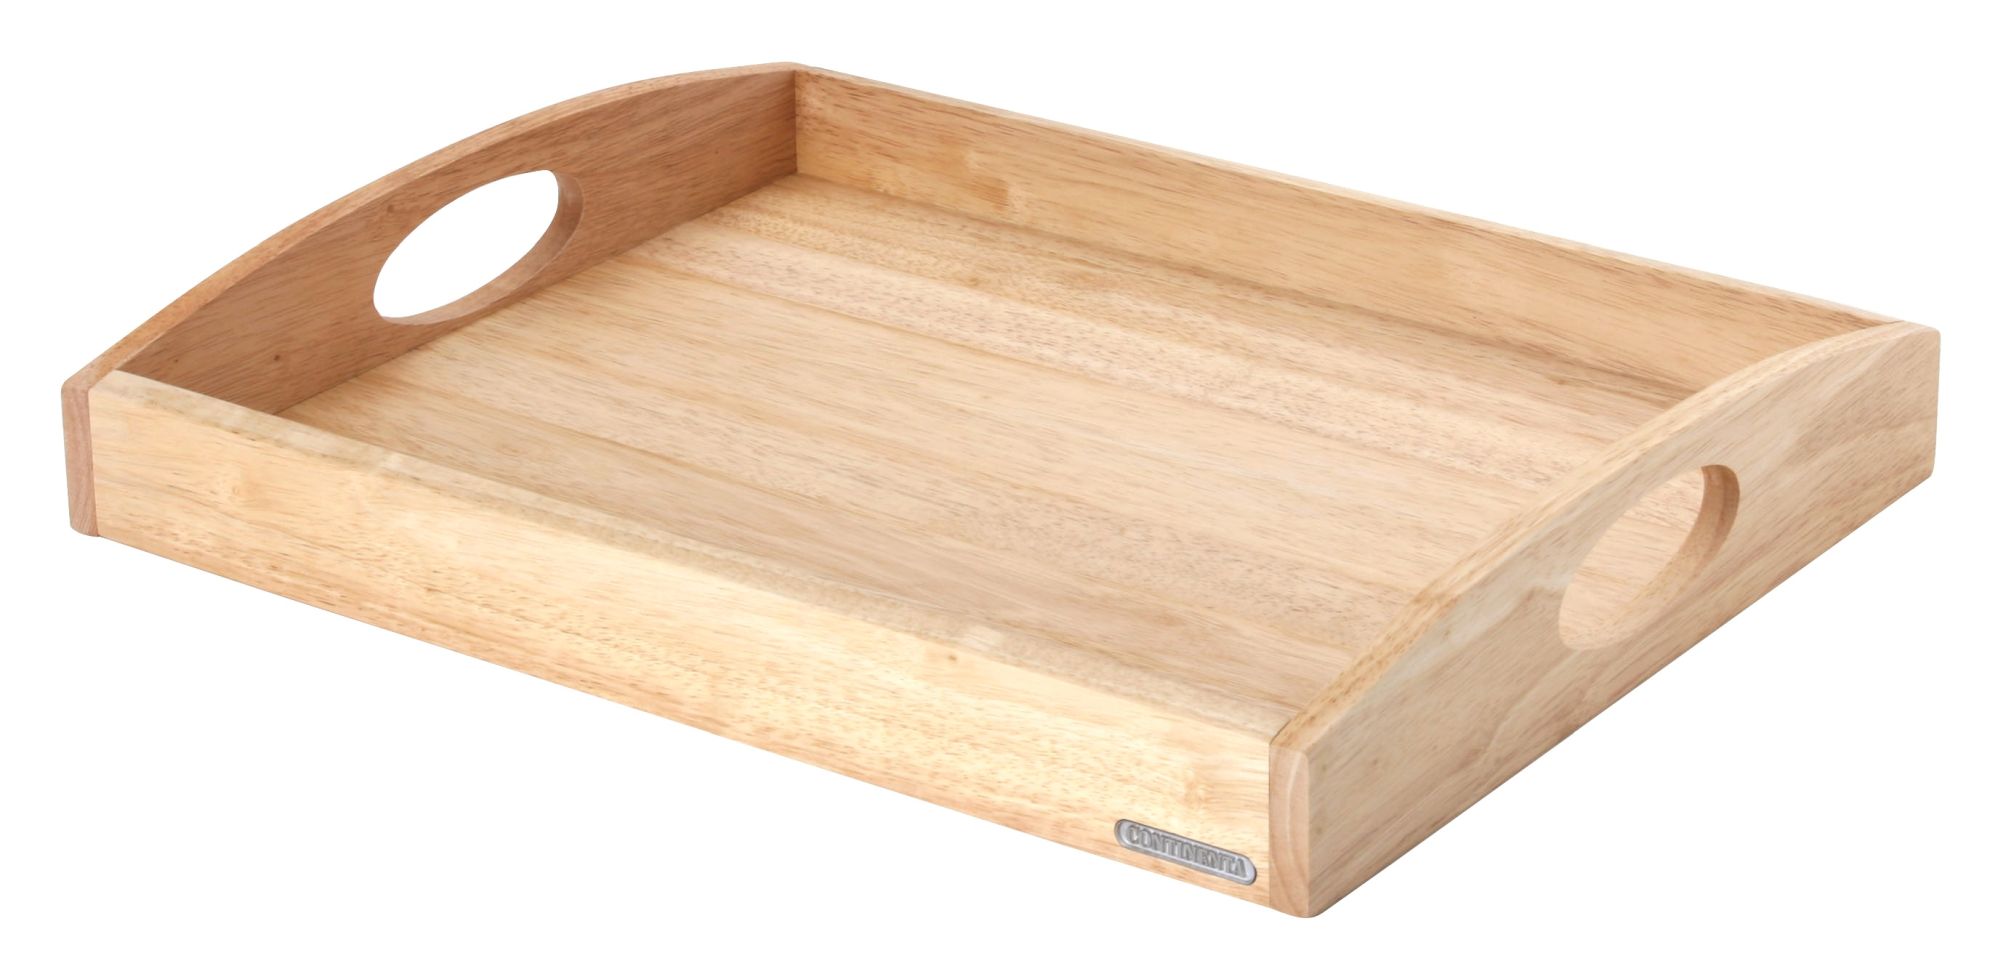 Continenta Tablett aus Gummibaumholz, Frühstückstablett, Holz-Serviertablett,  Servierbrett, rechteckig, erhältlich in verschiedenen Größen